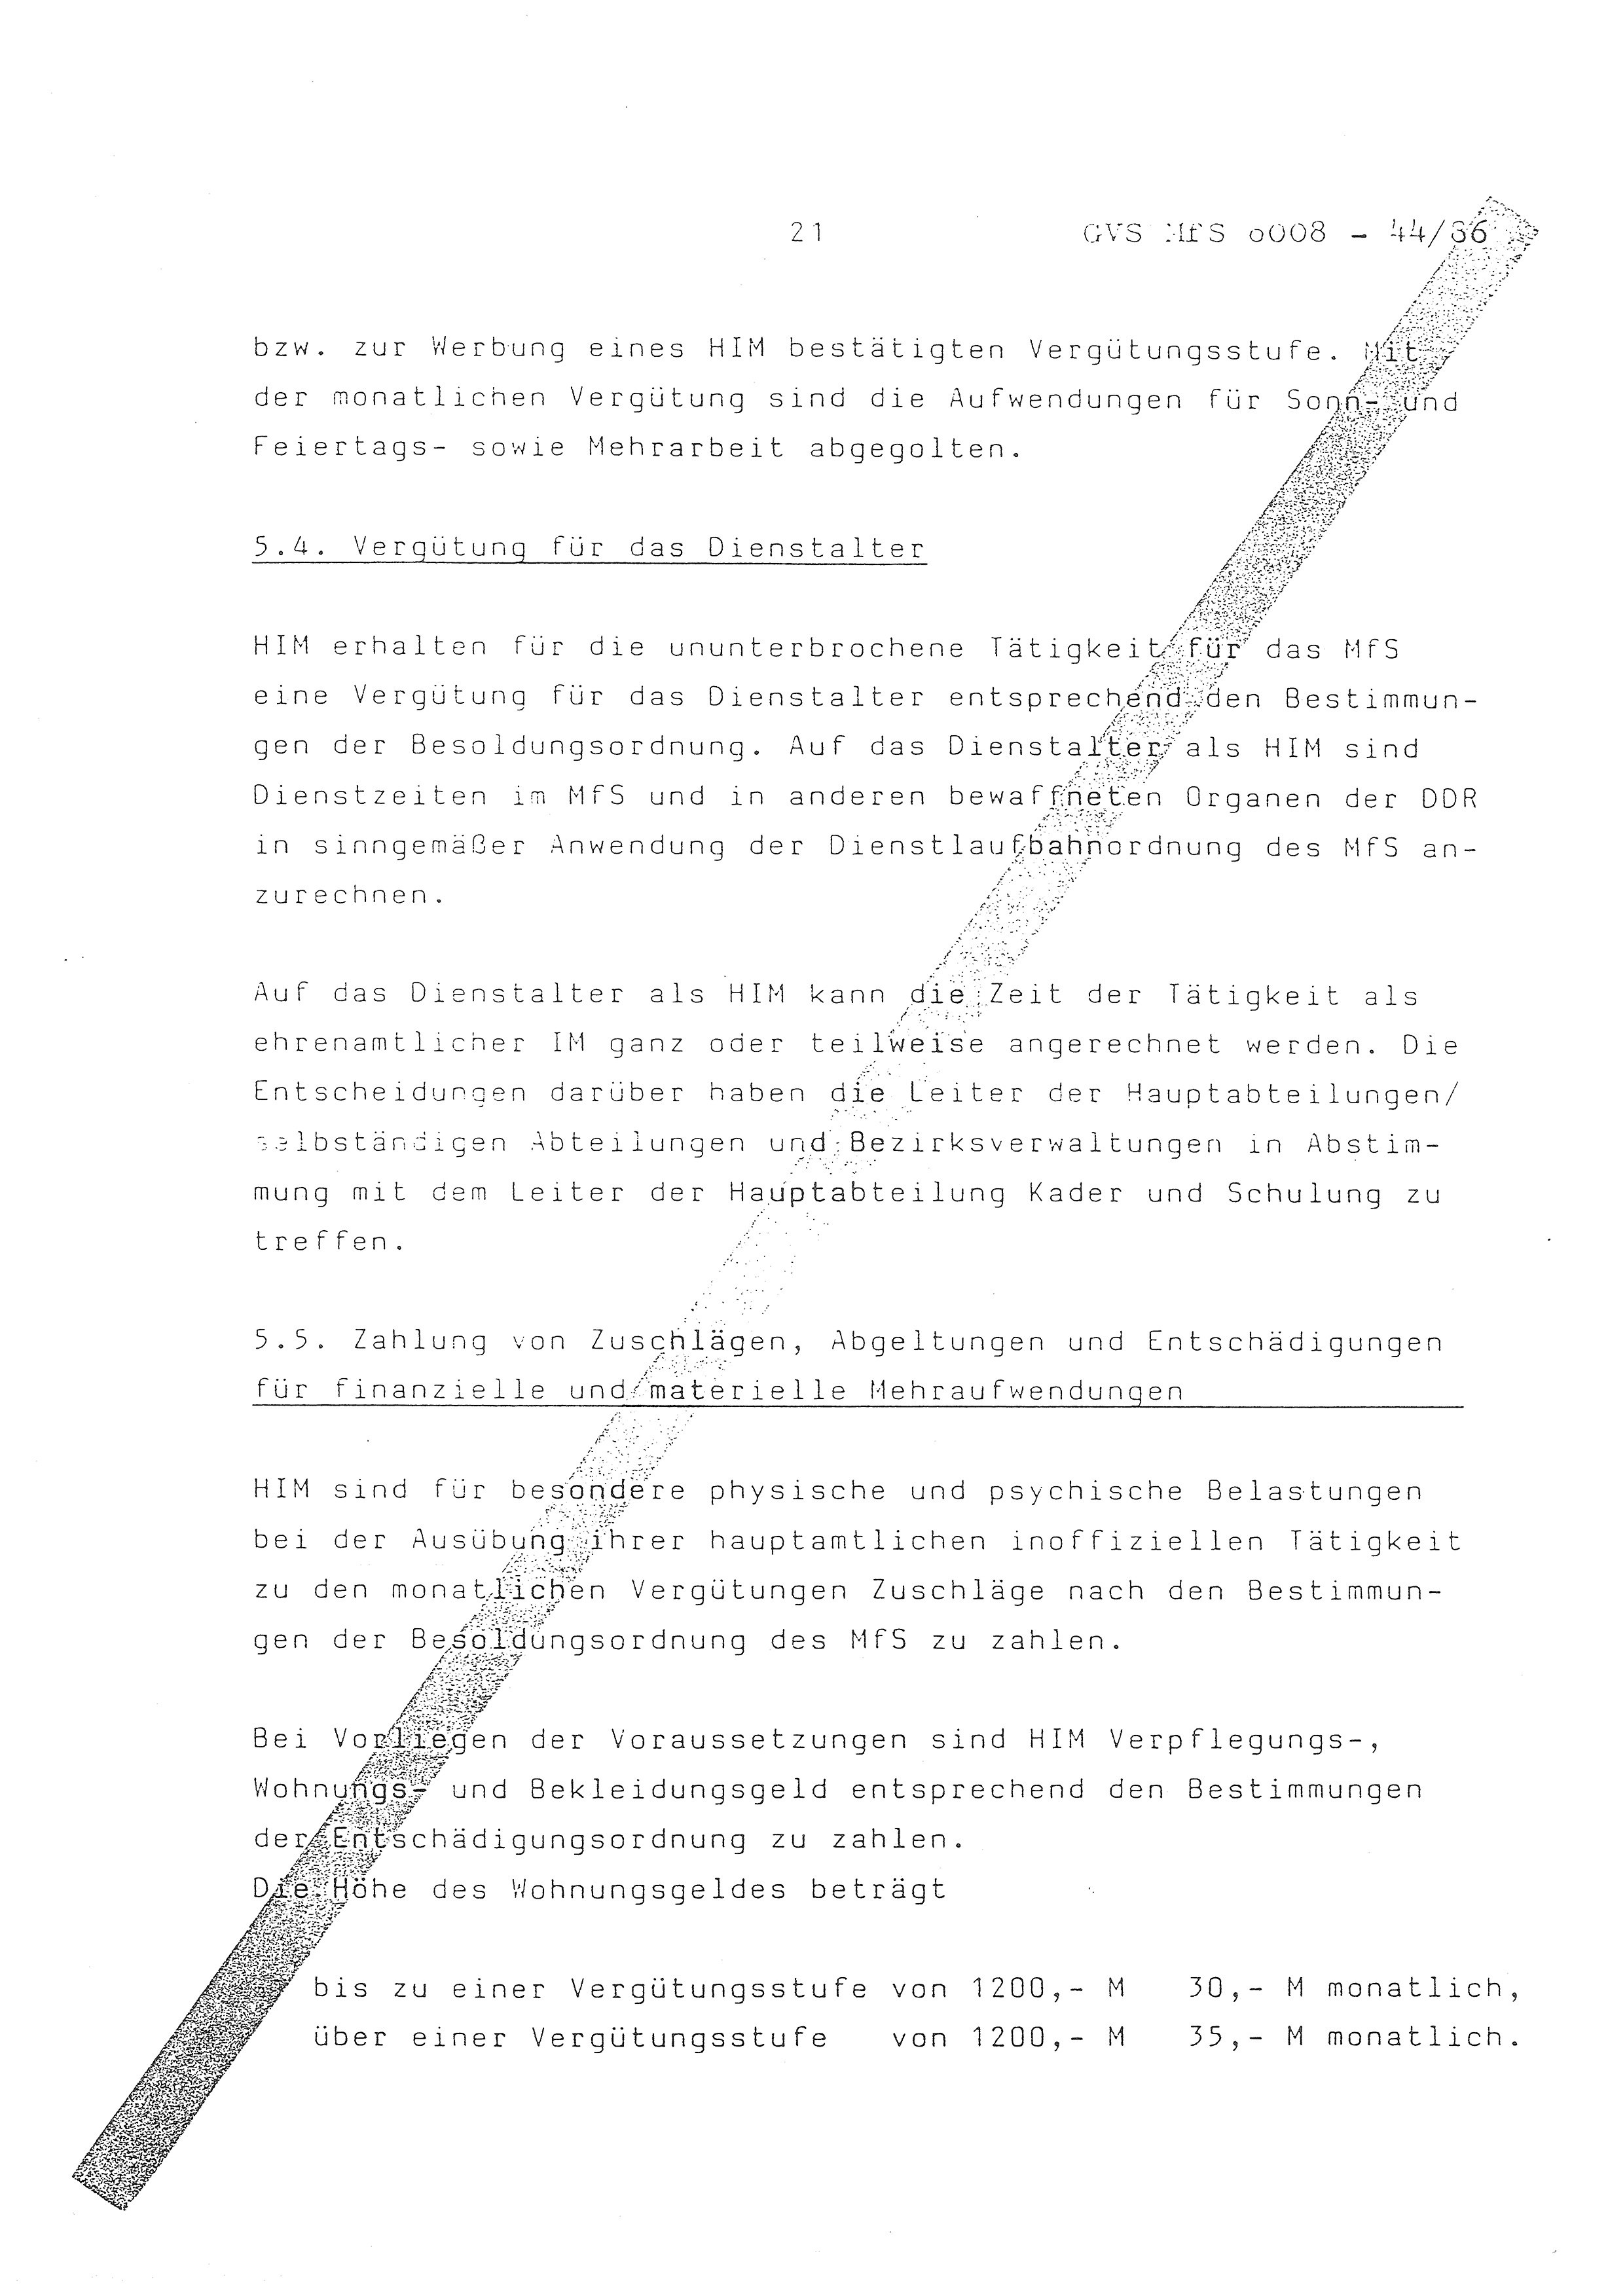 2. Durchführungsbestimmung zur Richtlinie 1/79 über die Arbeit mit hauptamtlichen Mitarbeitern des MfS (HIM), Deutsche Demokratische Republik (DDR), Ministerium für Staatssicherheit (MfS), Der Minister (Mielke), Geheime Verschlußsache (GVS) ooo8-44/86, Berlin 1986, Seite 21 (2. DB RL 1/79 DDR MfS Min. GVS ooo8-44/86 1986, S. 21)